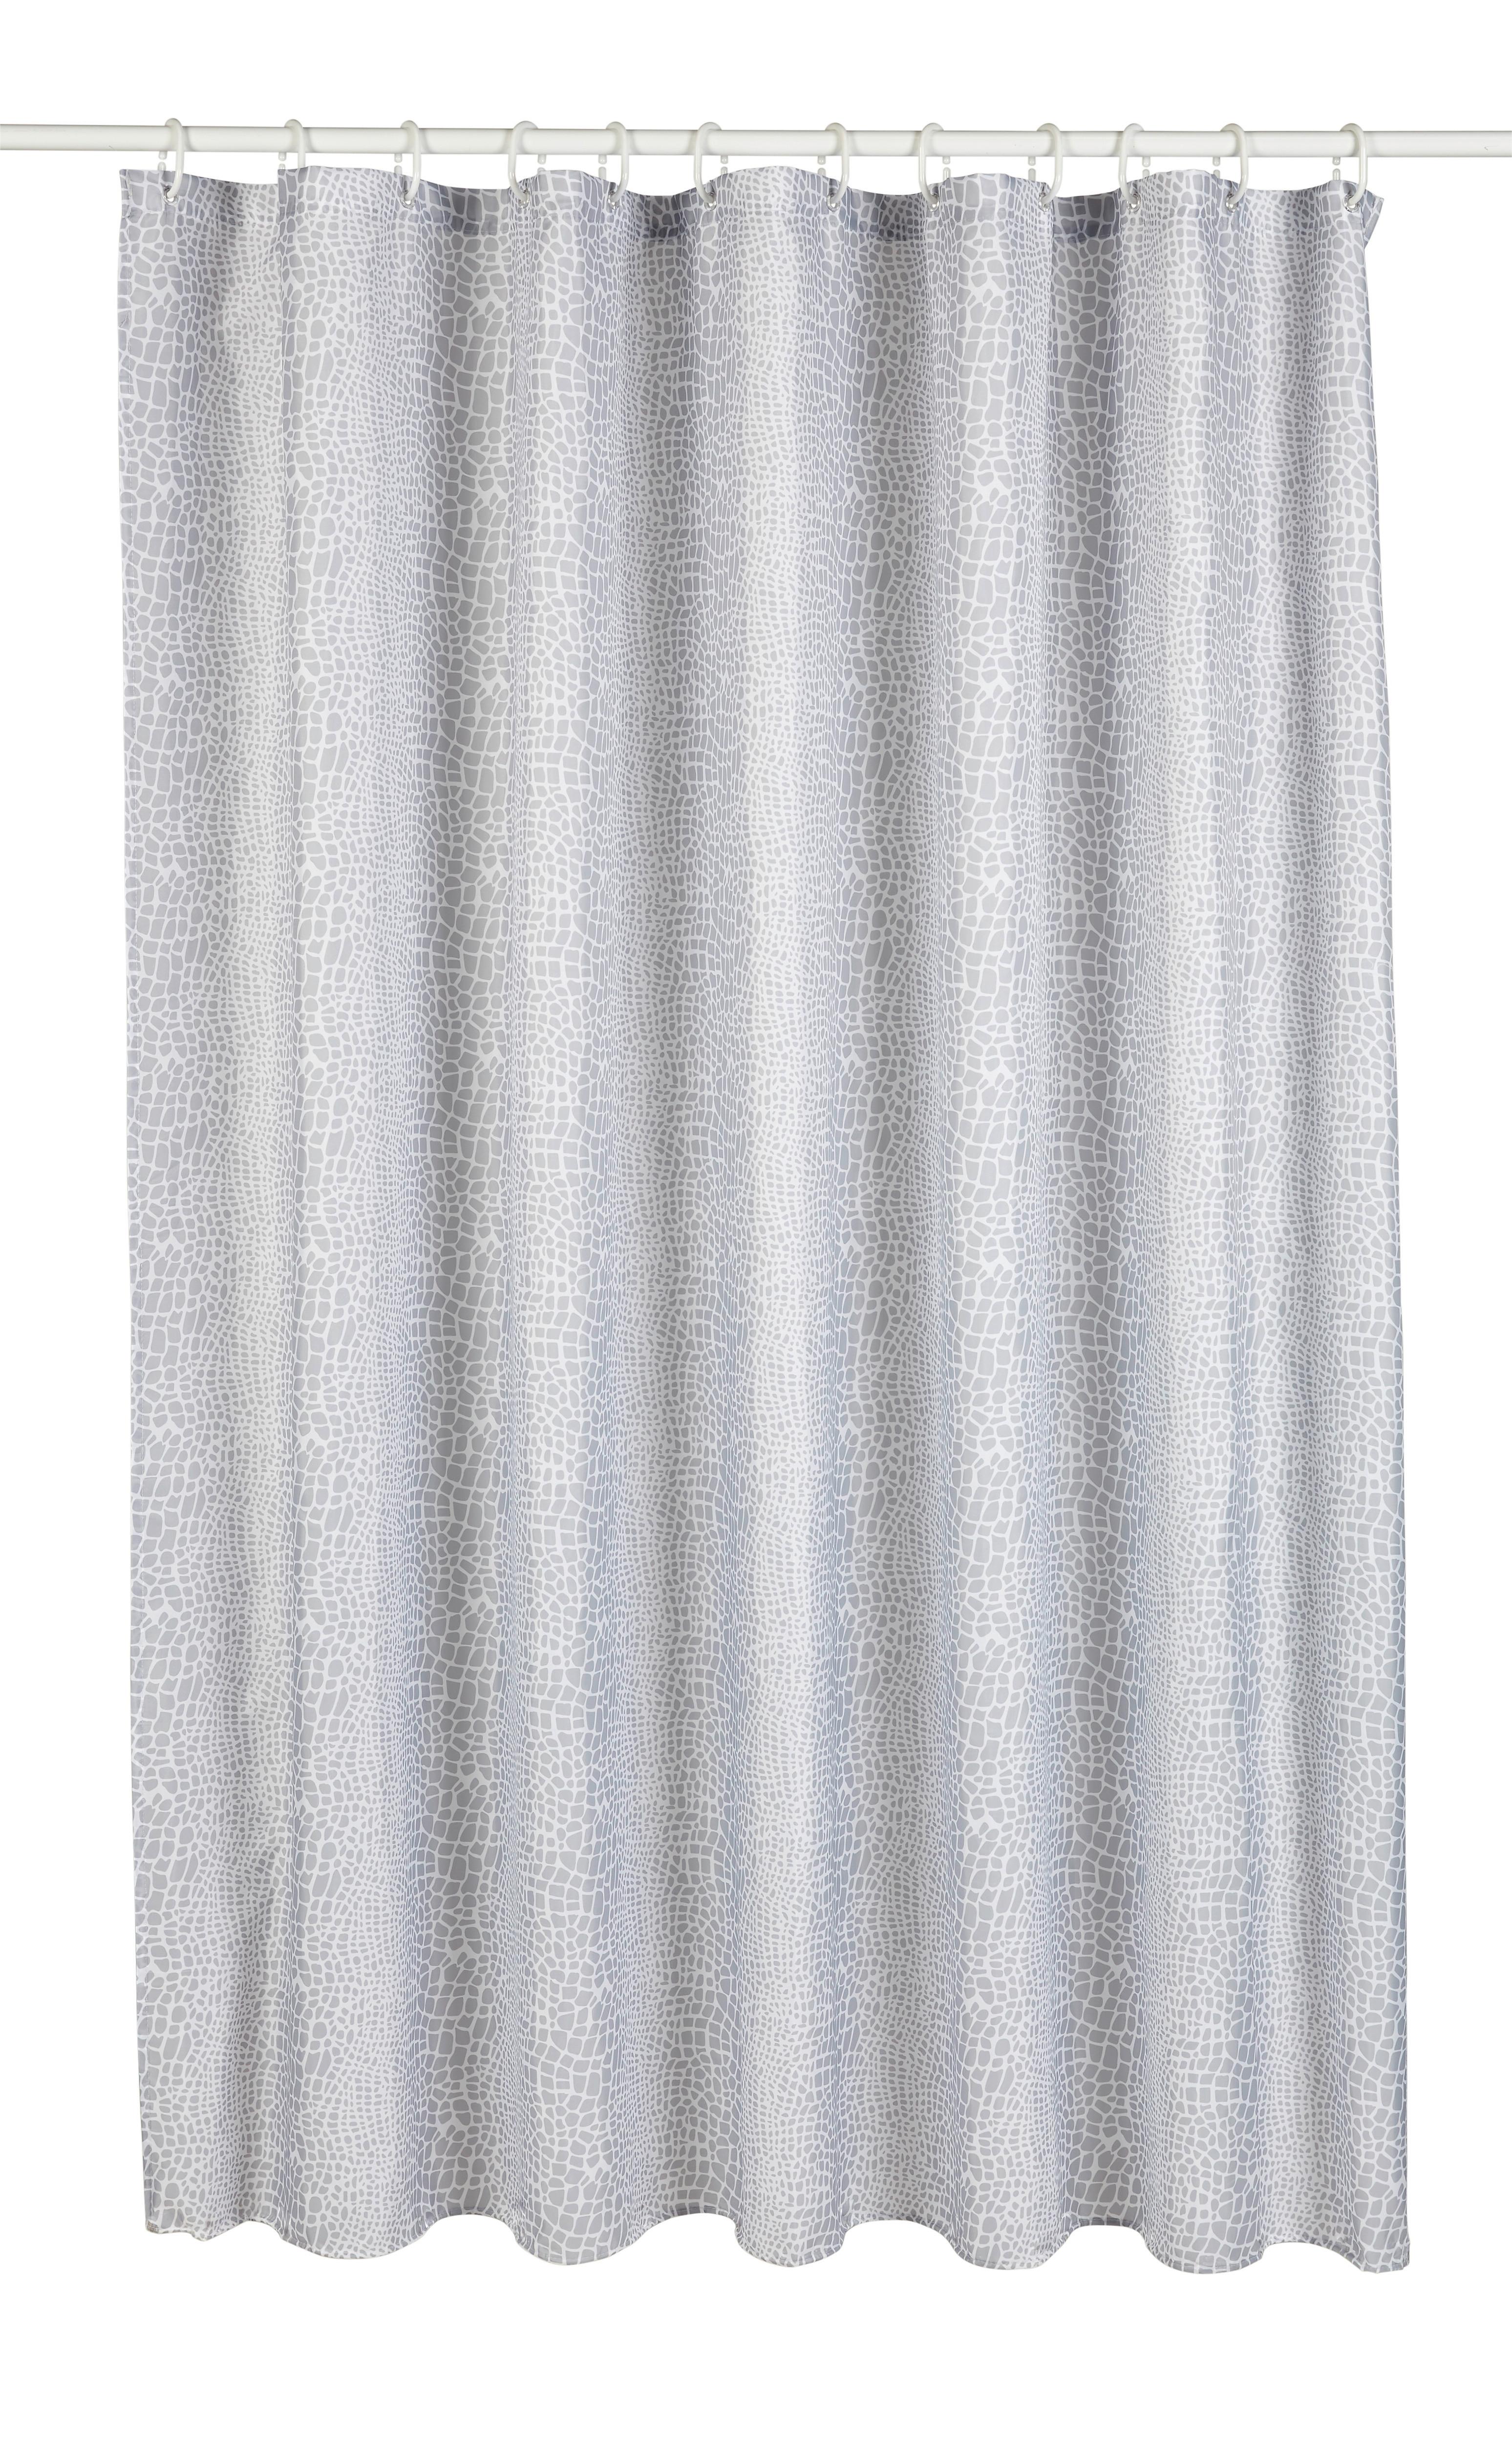 Duschvorhang Snakey ca. 180x200cm - Silberfarben/Weiß, Textil (180/200cm) - Modern Living